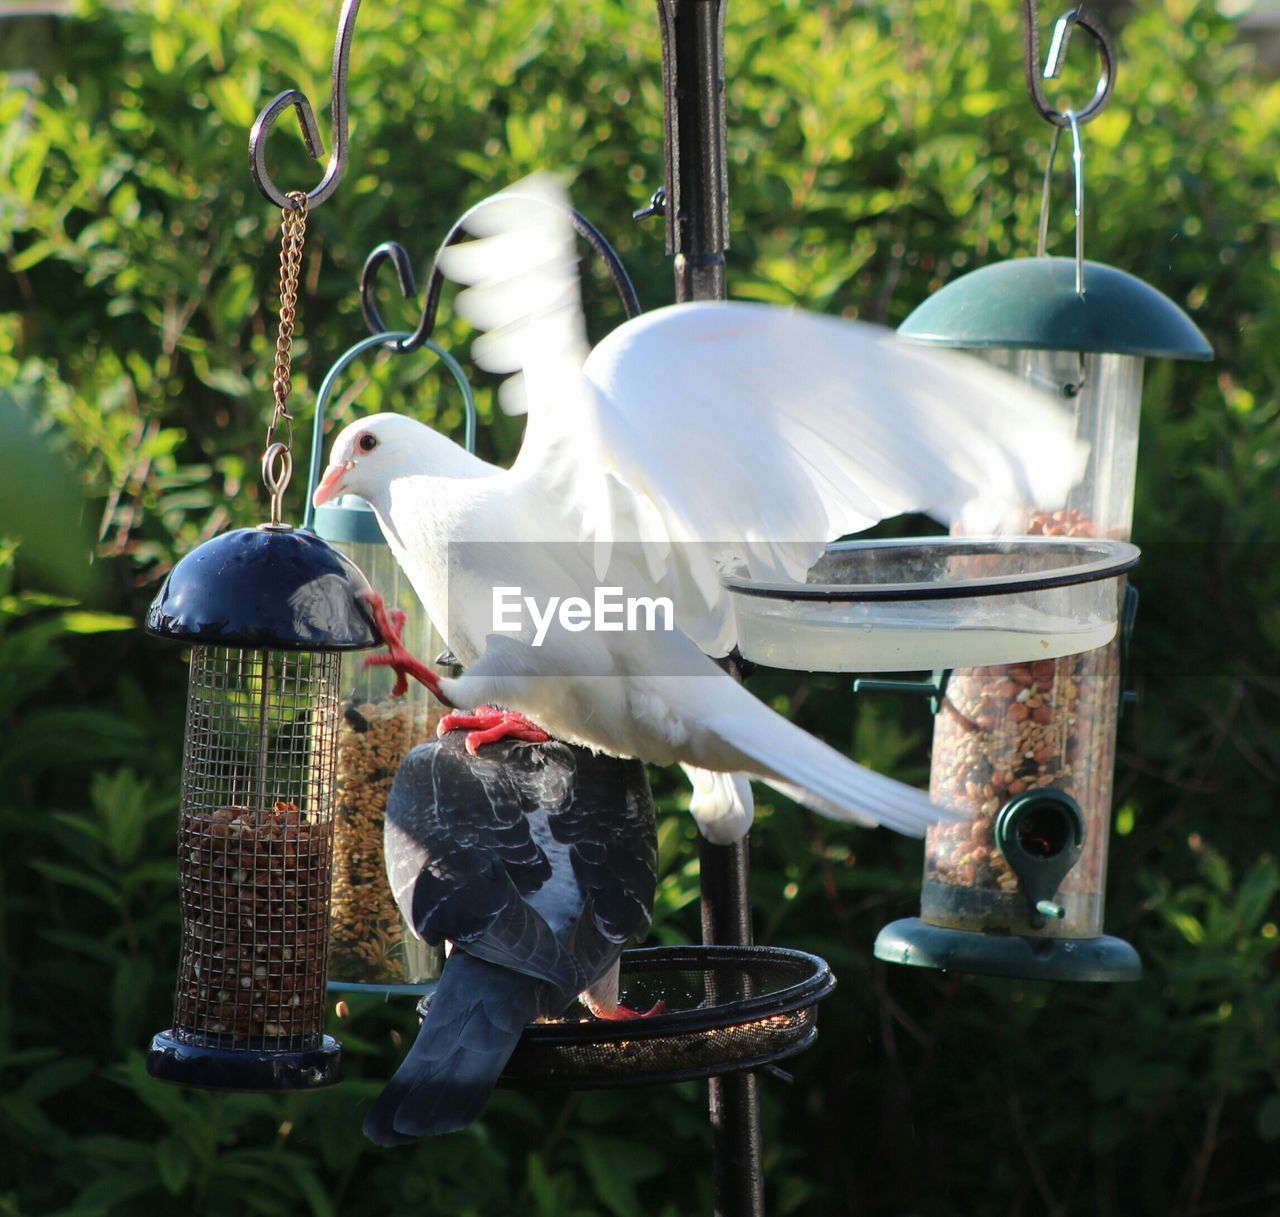 Pigeons feeding on bird feeder in garden